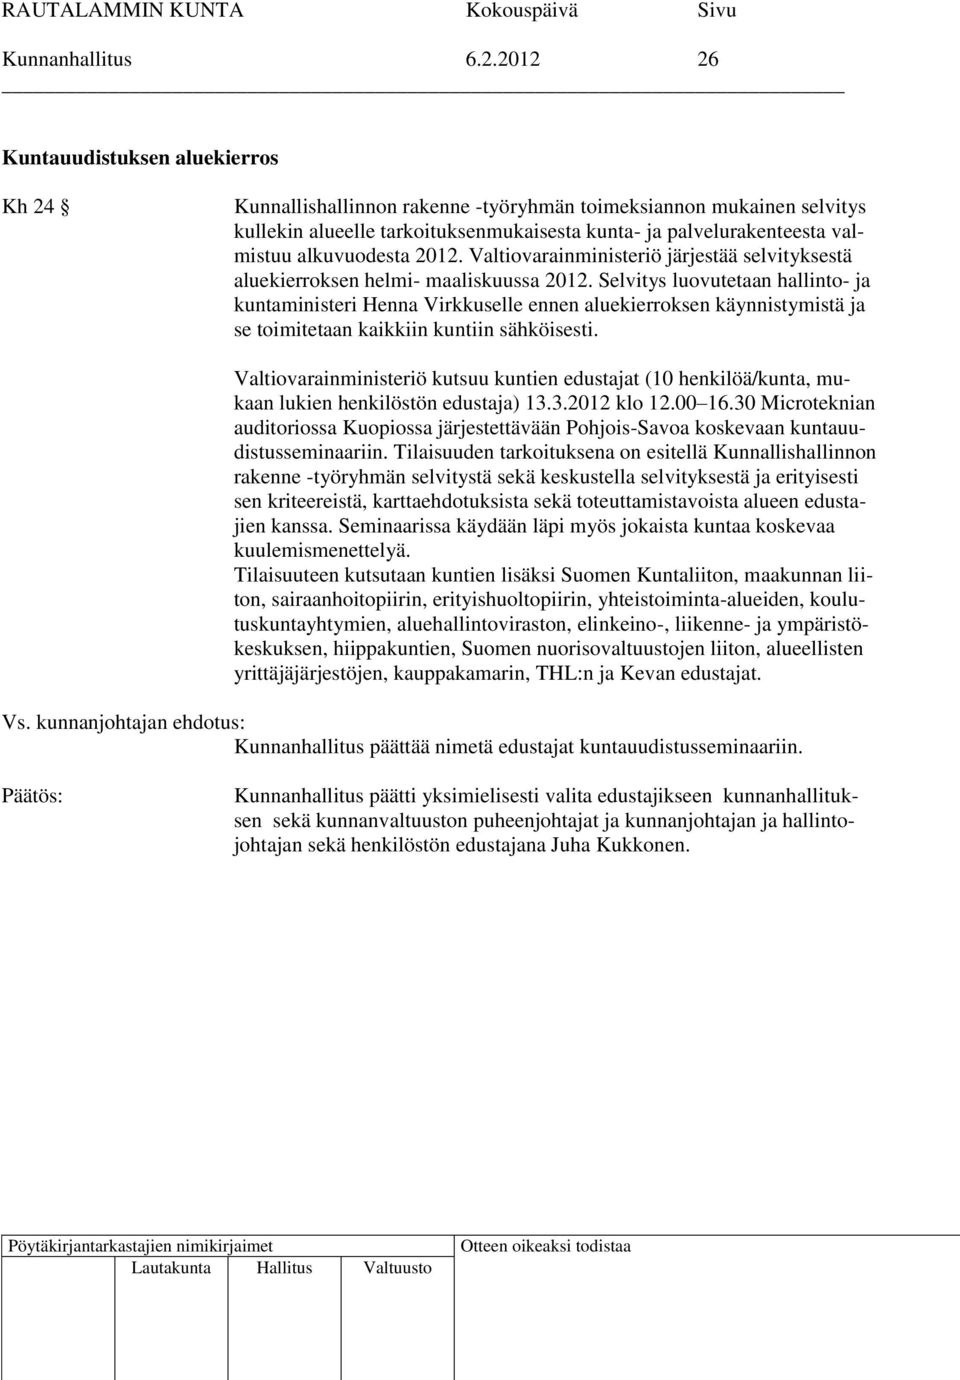 alkuvuodesta 2012. Valtiovarainministeriö järjestää selvityksestä aluekierroksen helmi- maaliskuussa 2012.